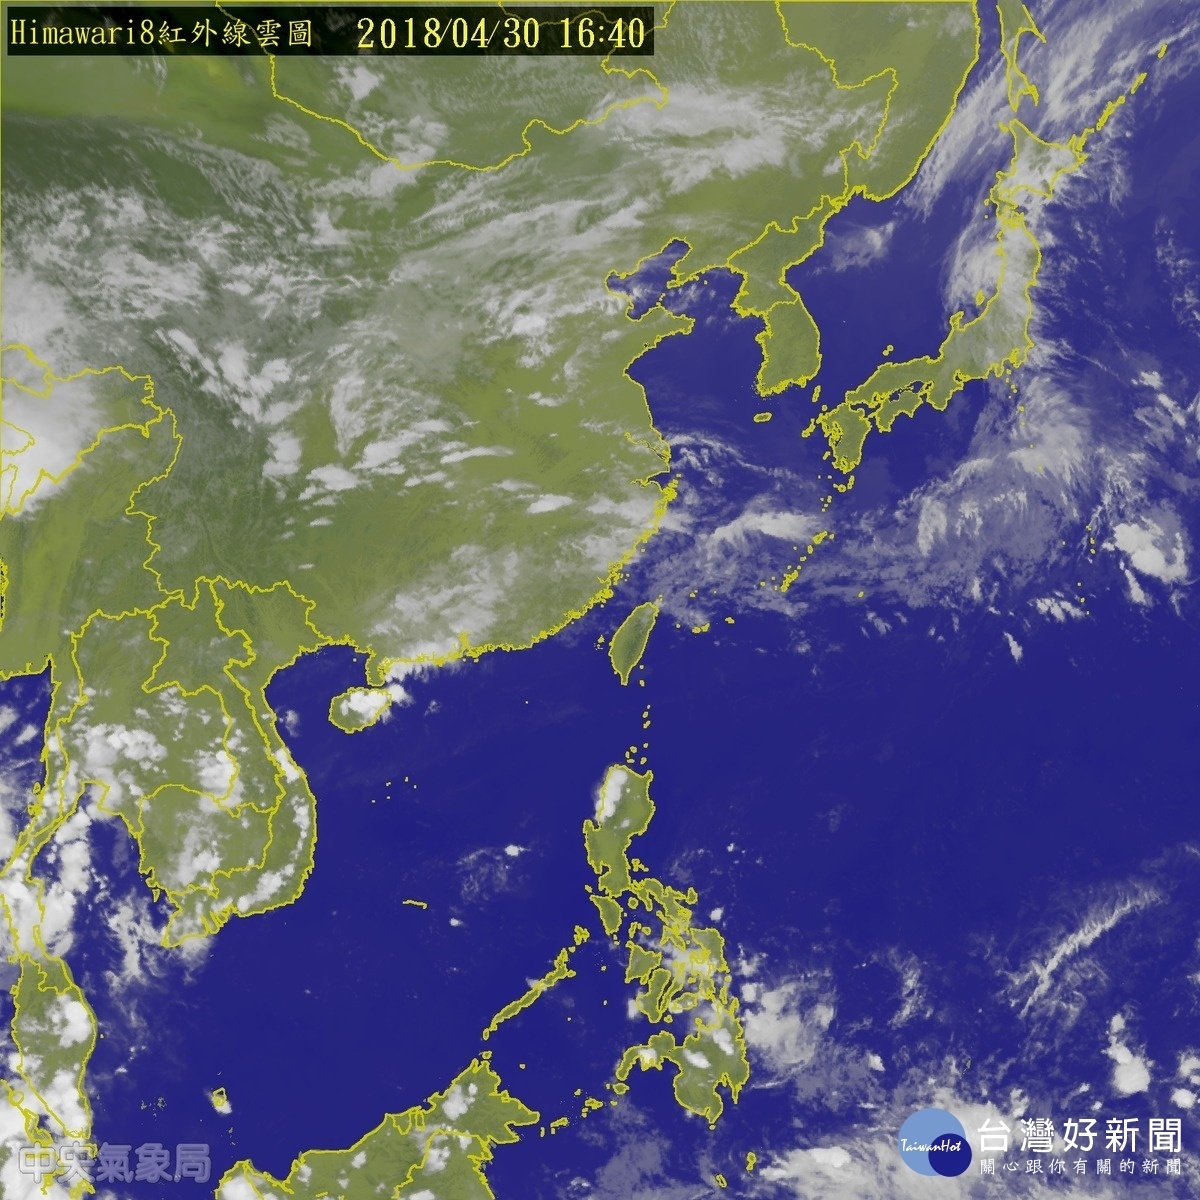 梅雨季將臨氣象局預測今年梅雨正常至偏少 台灣好新聞taiwanhot Net